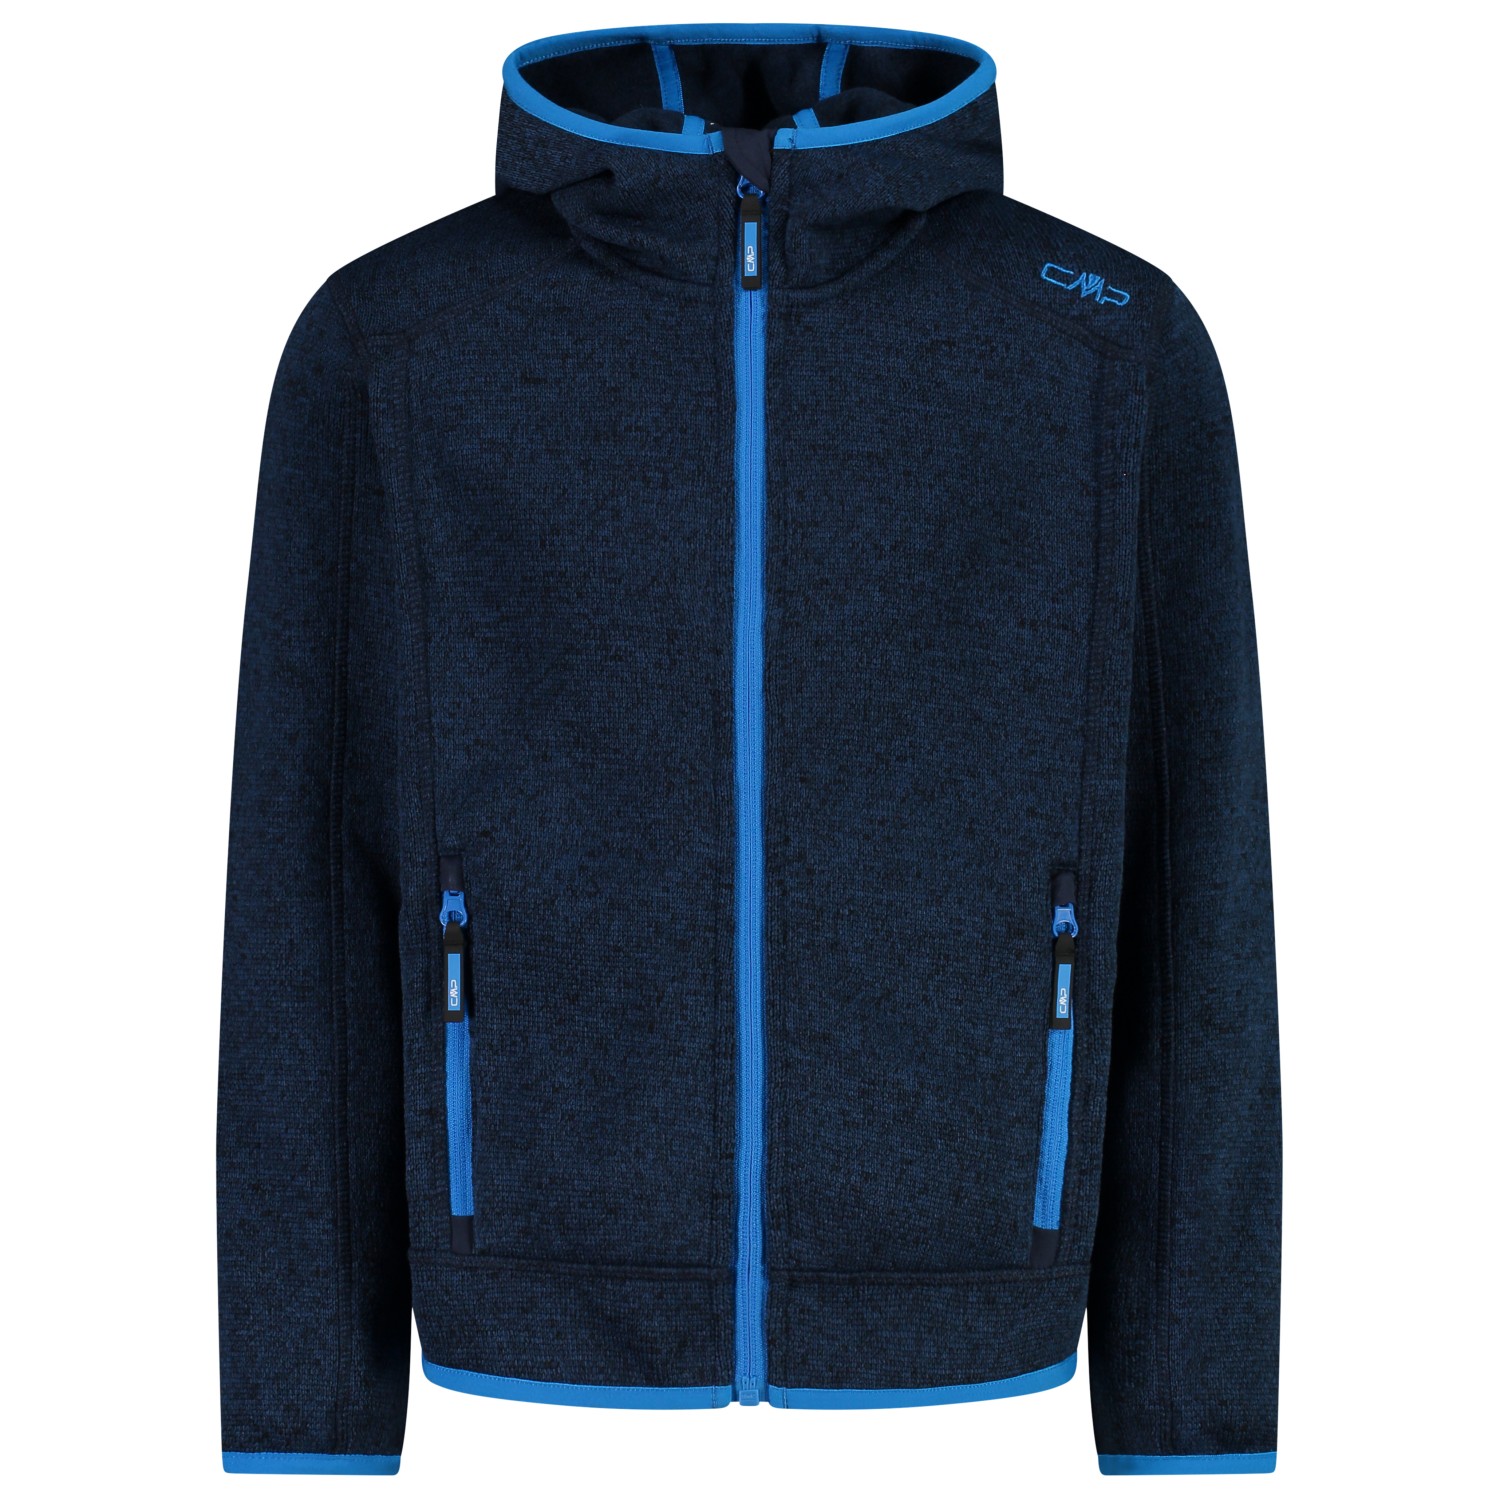 Флисовая жилетка Cmp Jacket Jacquard Knitted 3H60747N, цвет Black Blue/River